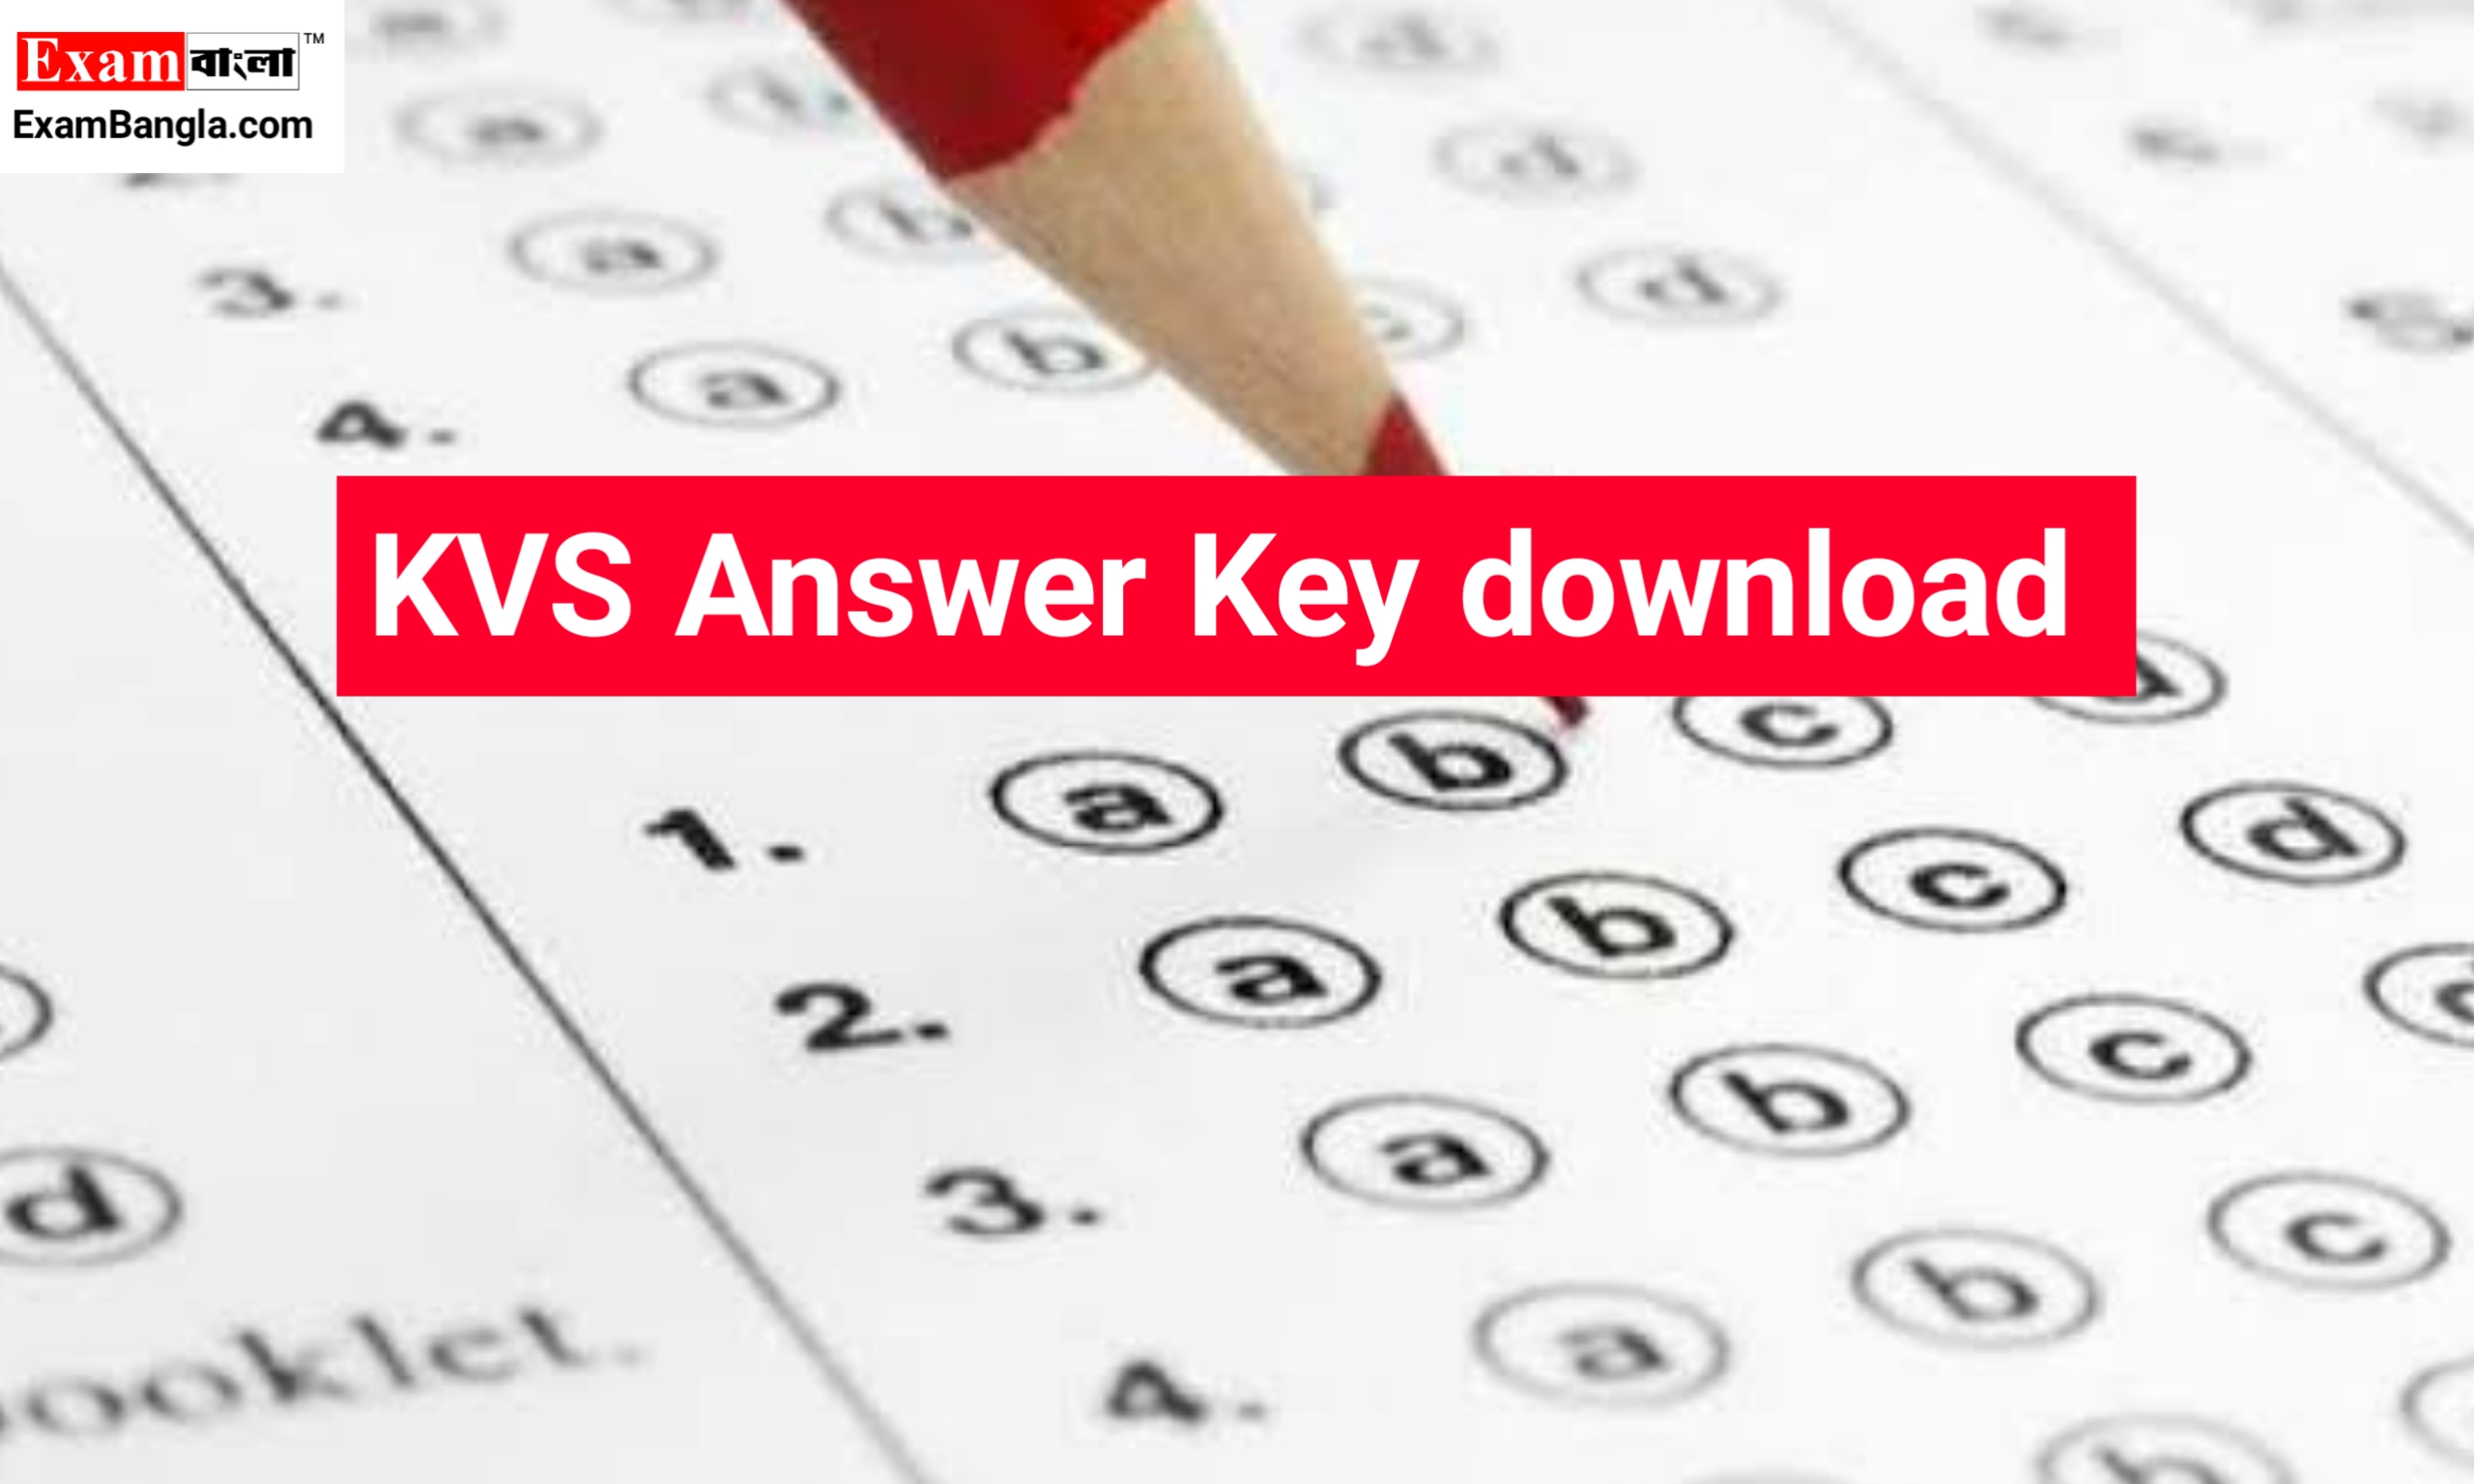 KVS Answer Key